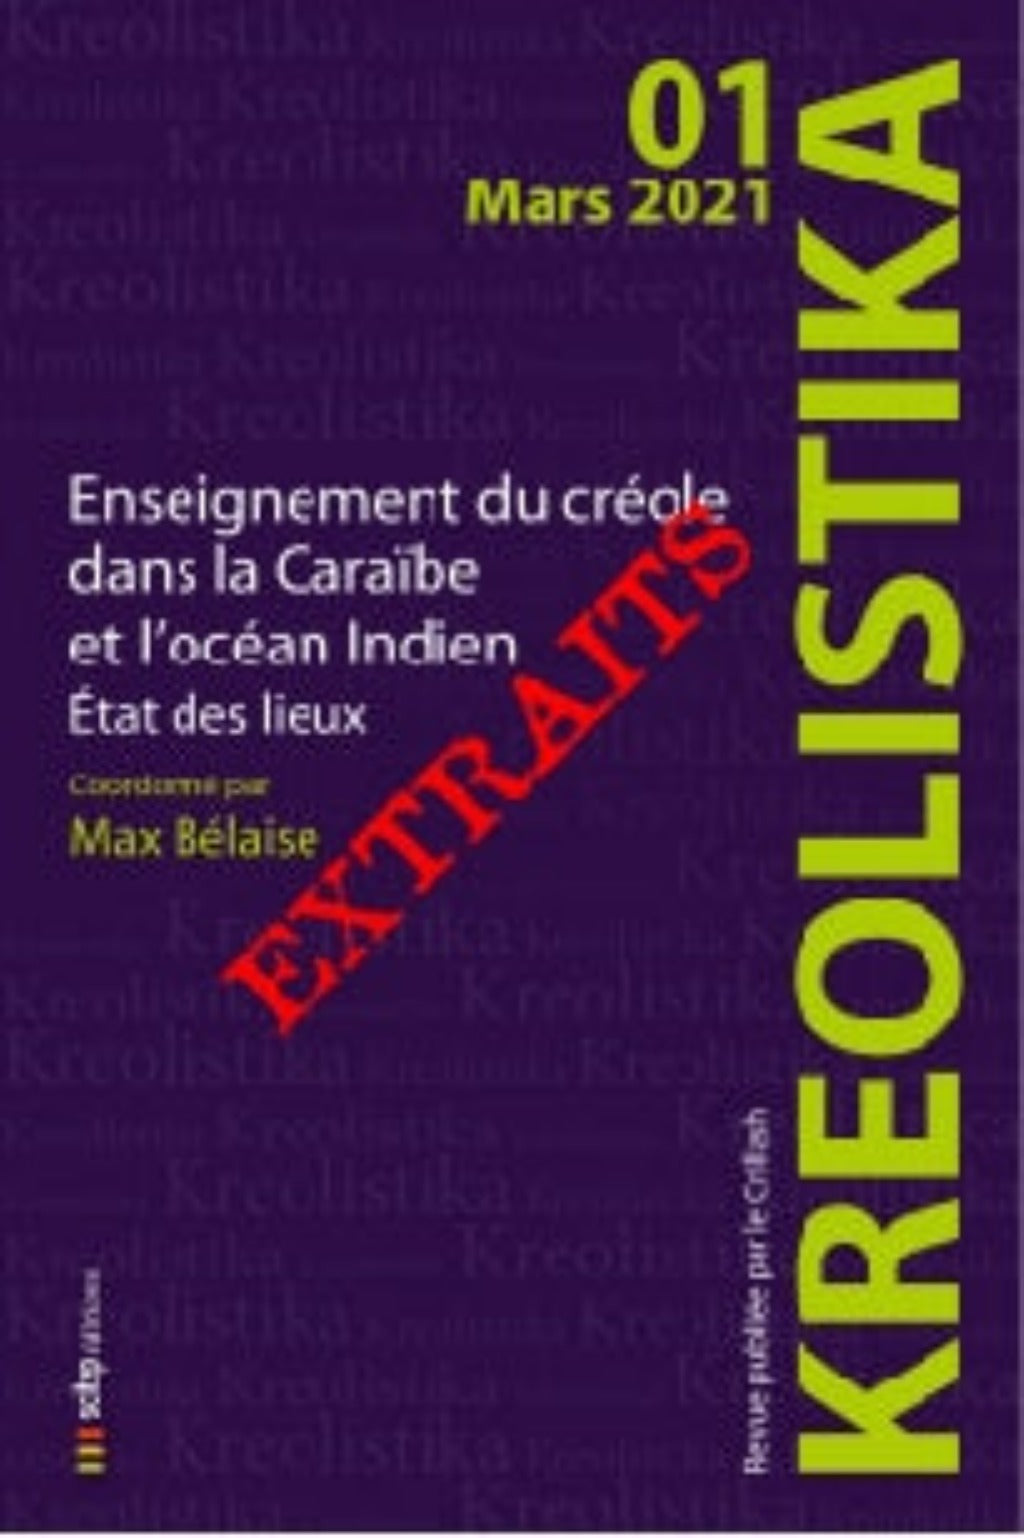 Couverture extraits Kréolistika n°1 éditeur SCITEP édition auteur Max Bélaise